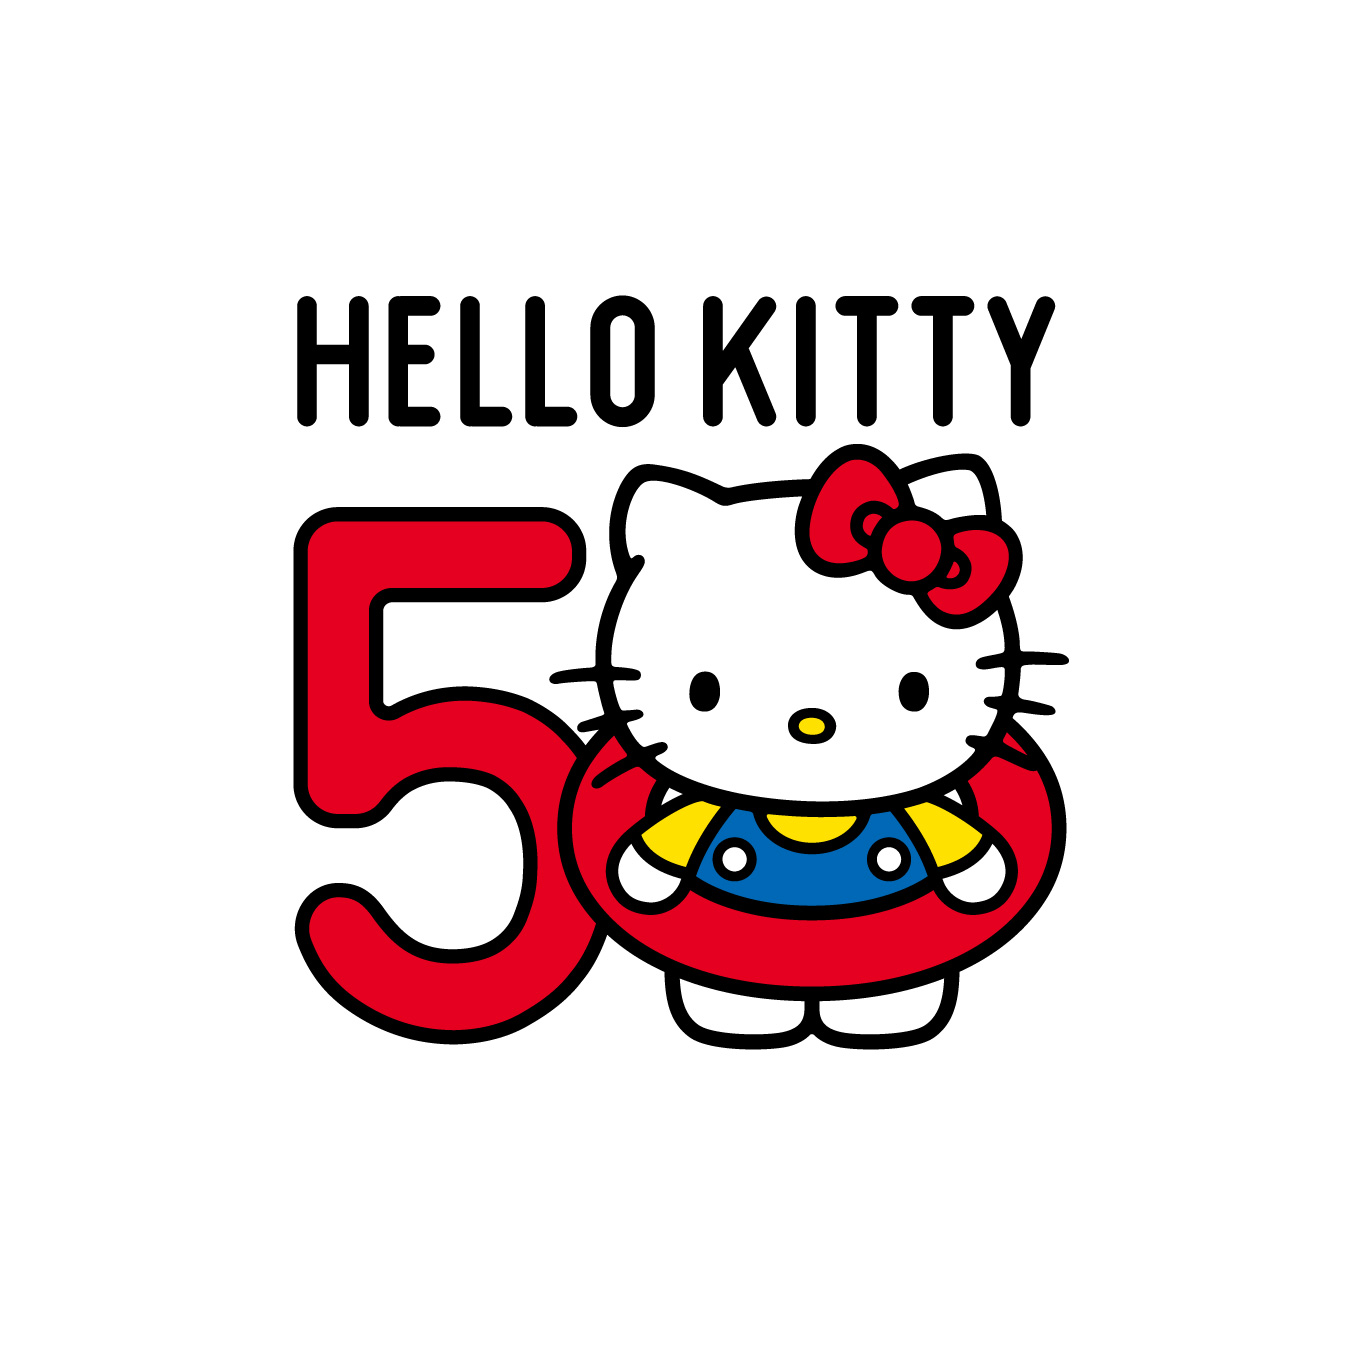 キティちゃん3Dポストカード☆彡画像三枚目六枚ありますリンゴ♪